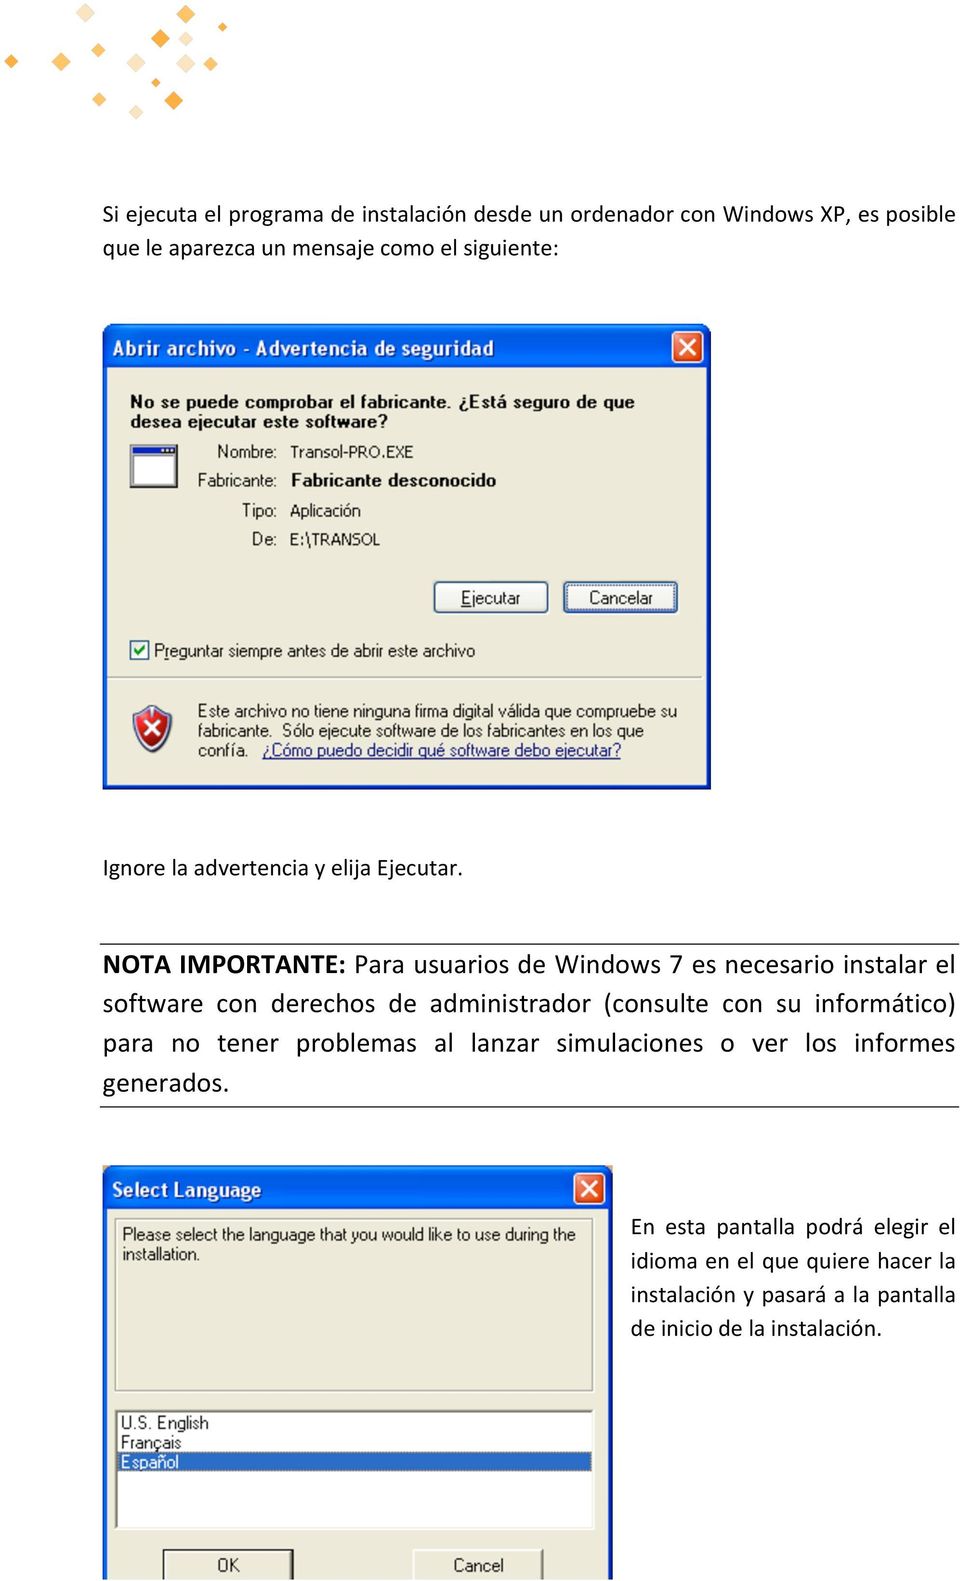 NOTA IMPORTANTE: Para usuarios de Windows 7 es necesario instalar el software con derechos de administrador (consulte con su